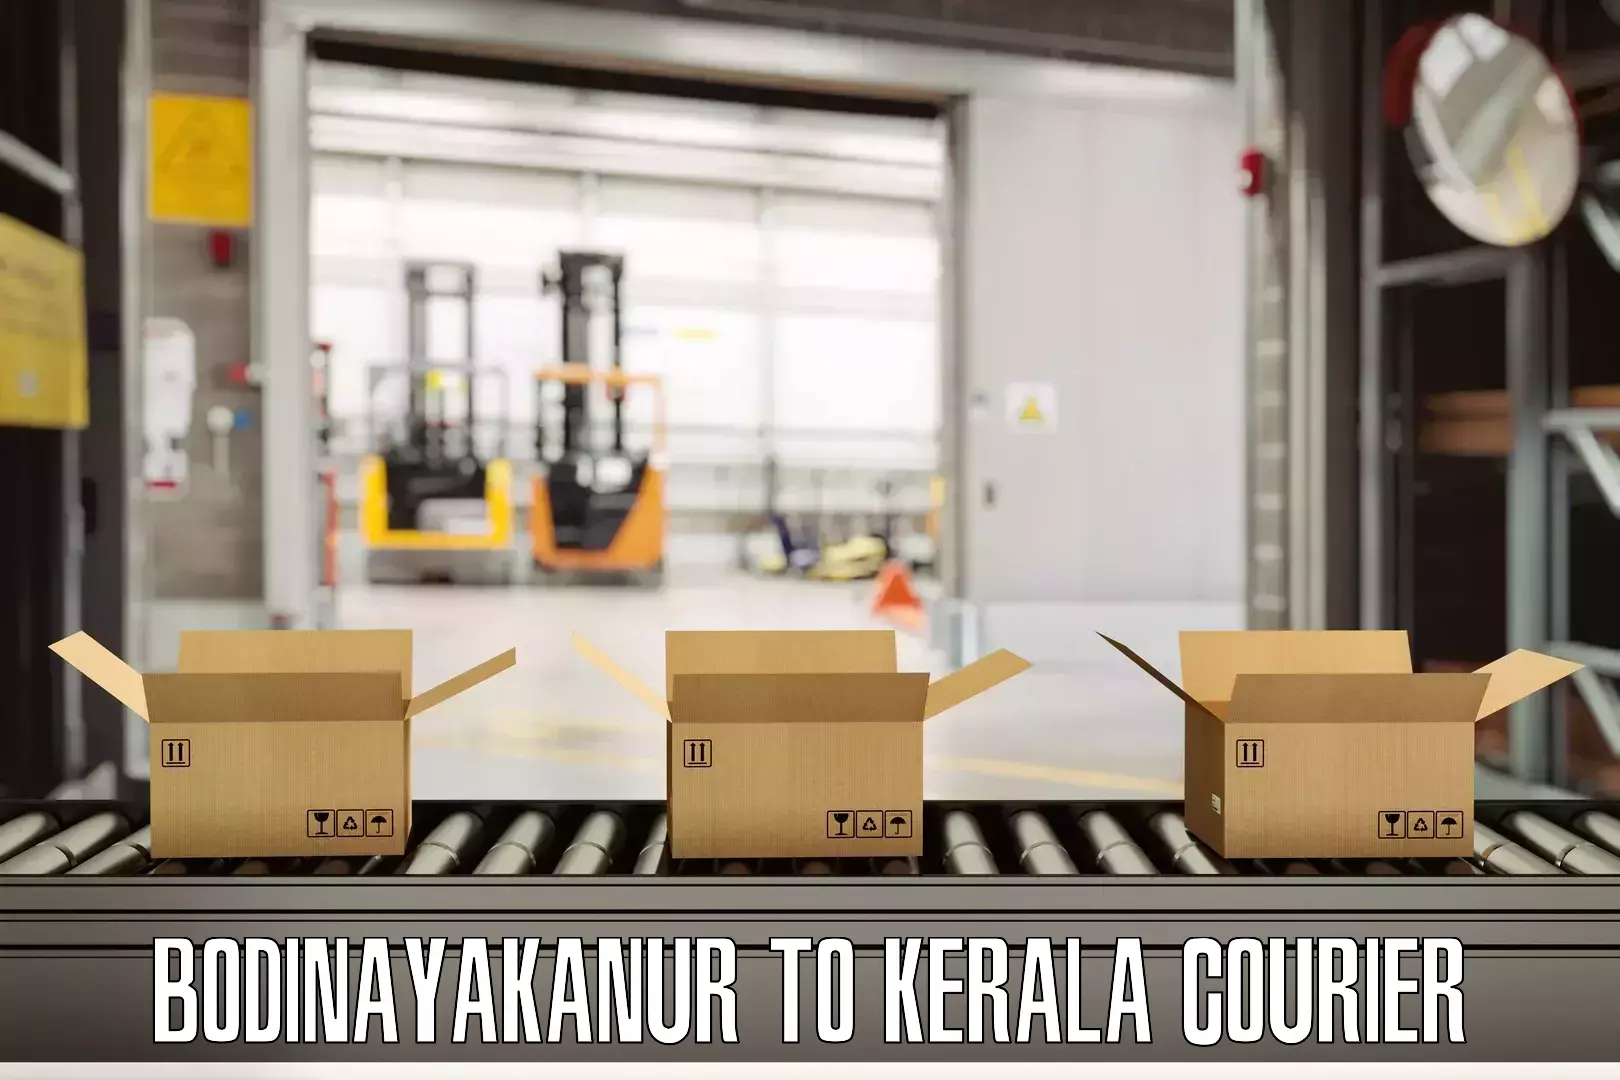 Luggage courier planning Bodinayakanur to Kalluvathukkal